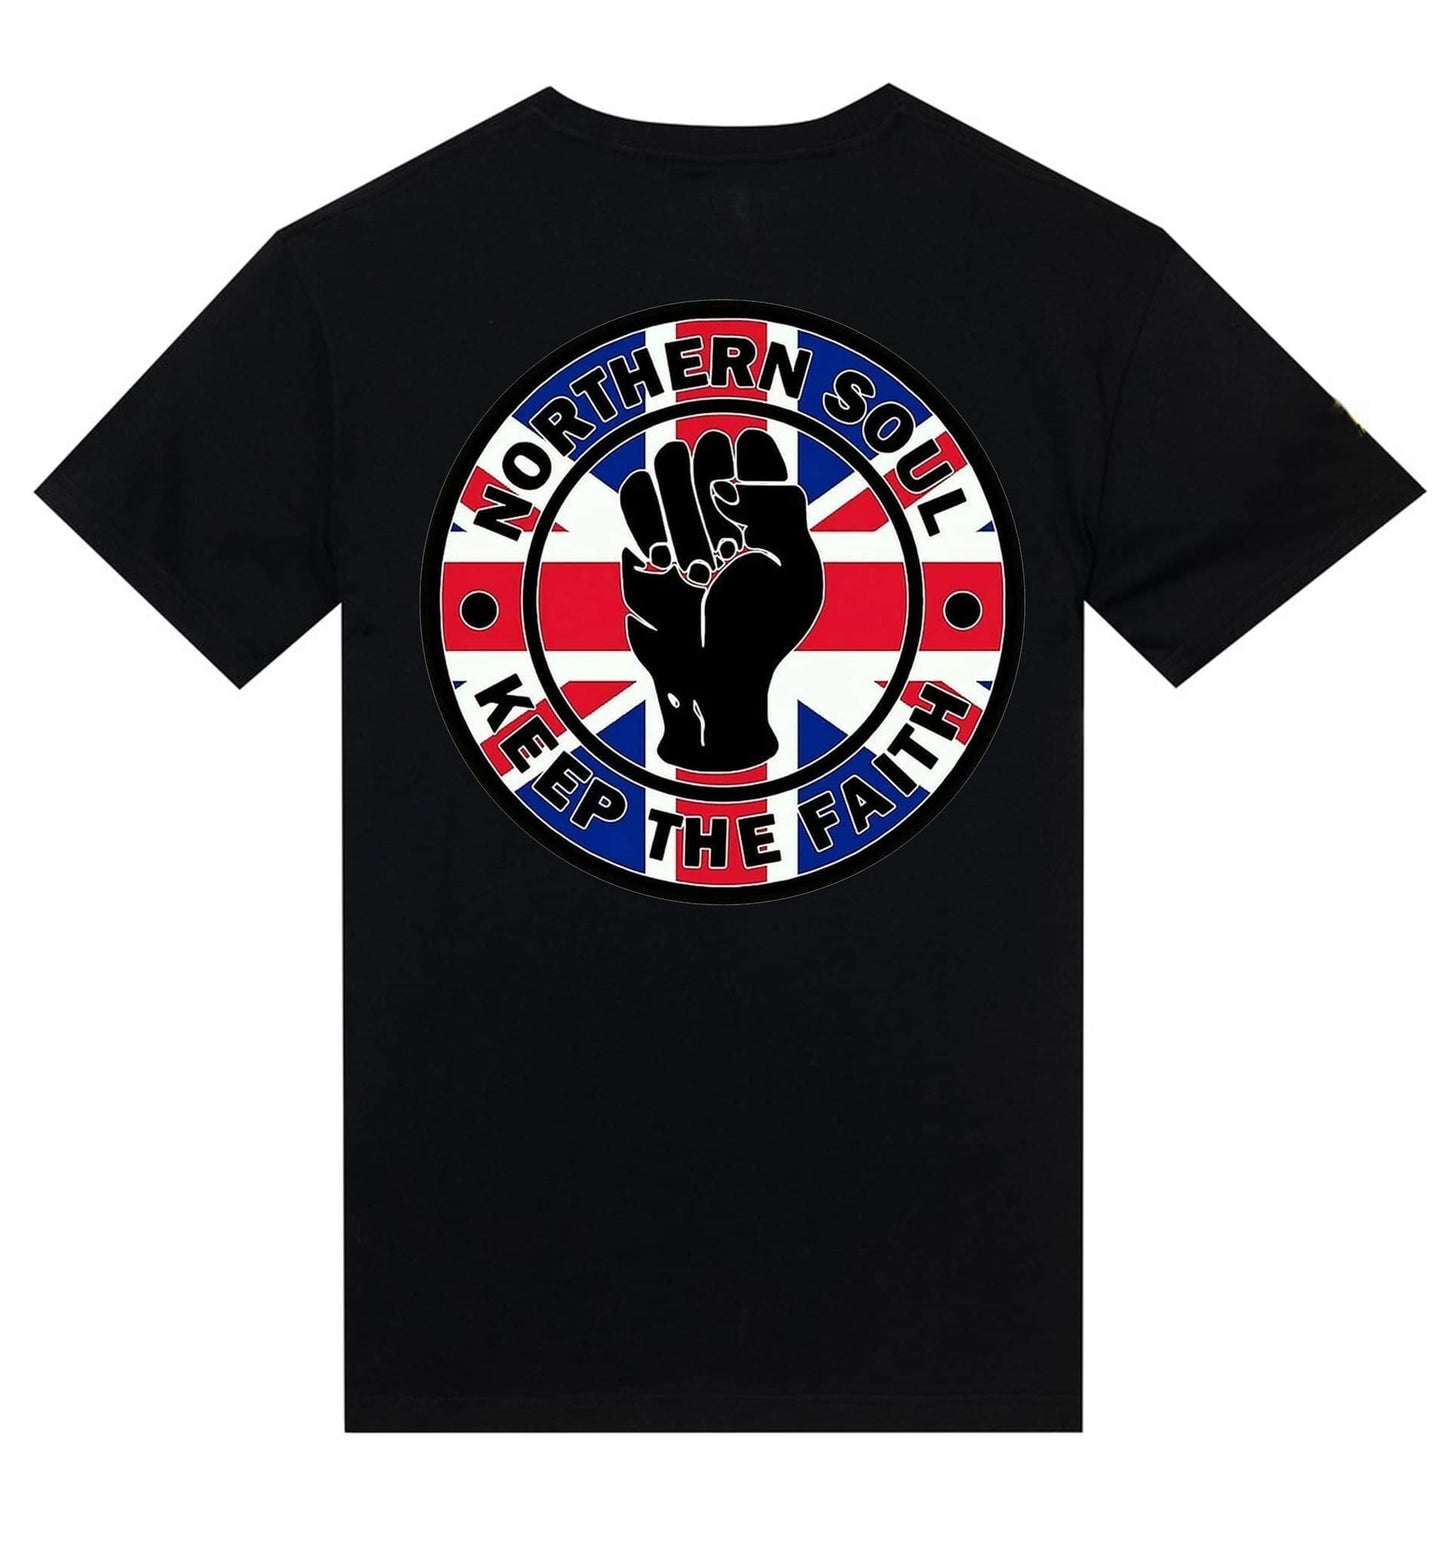 T-shirt "Northern Soul...Keep the Faith" Flag UK